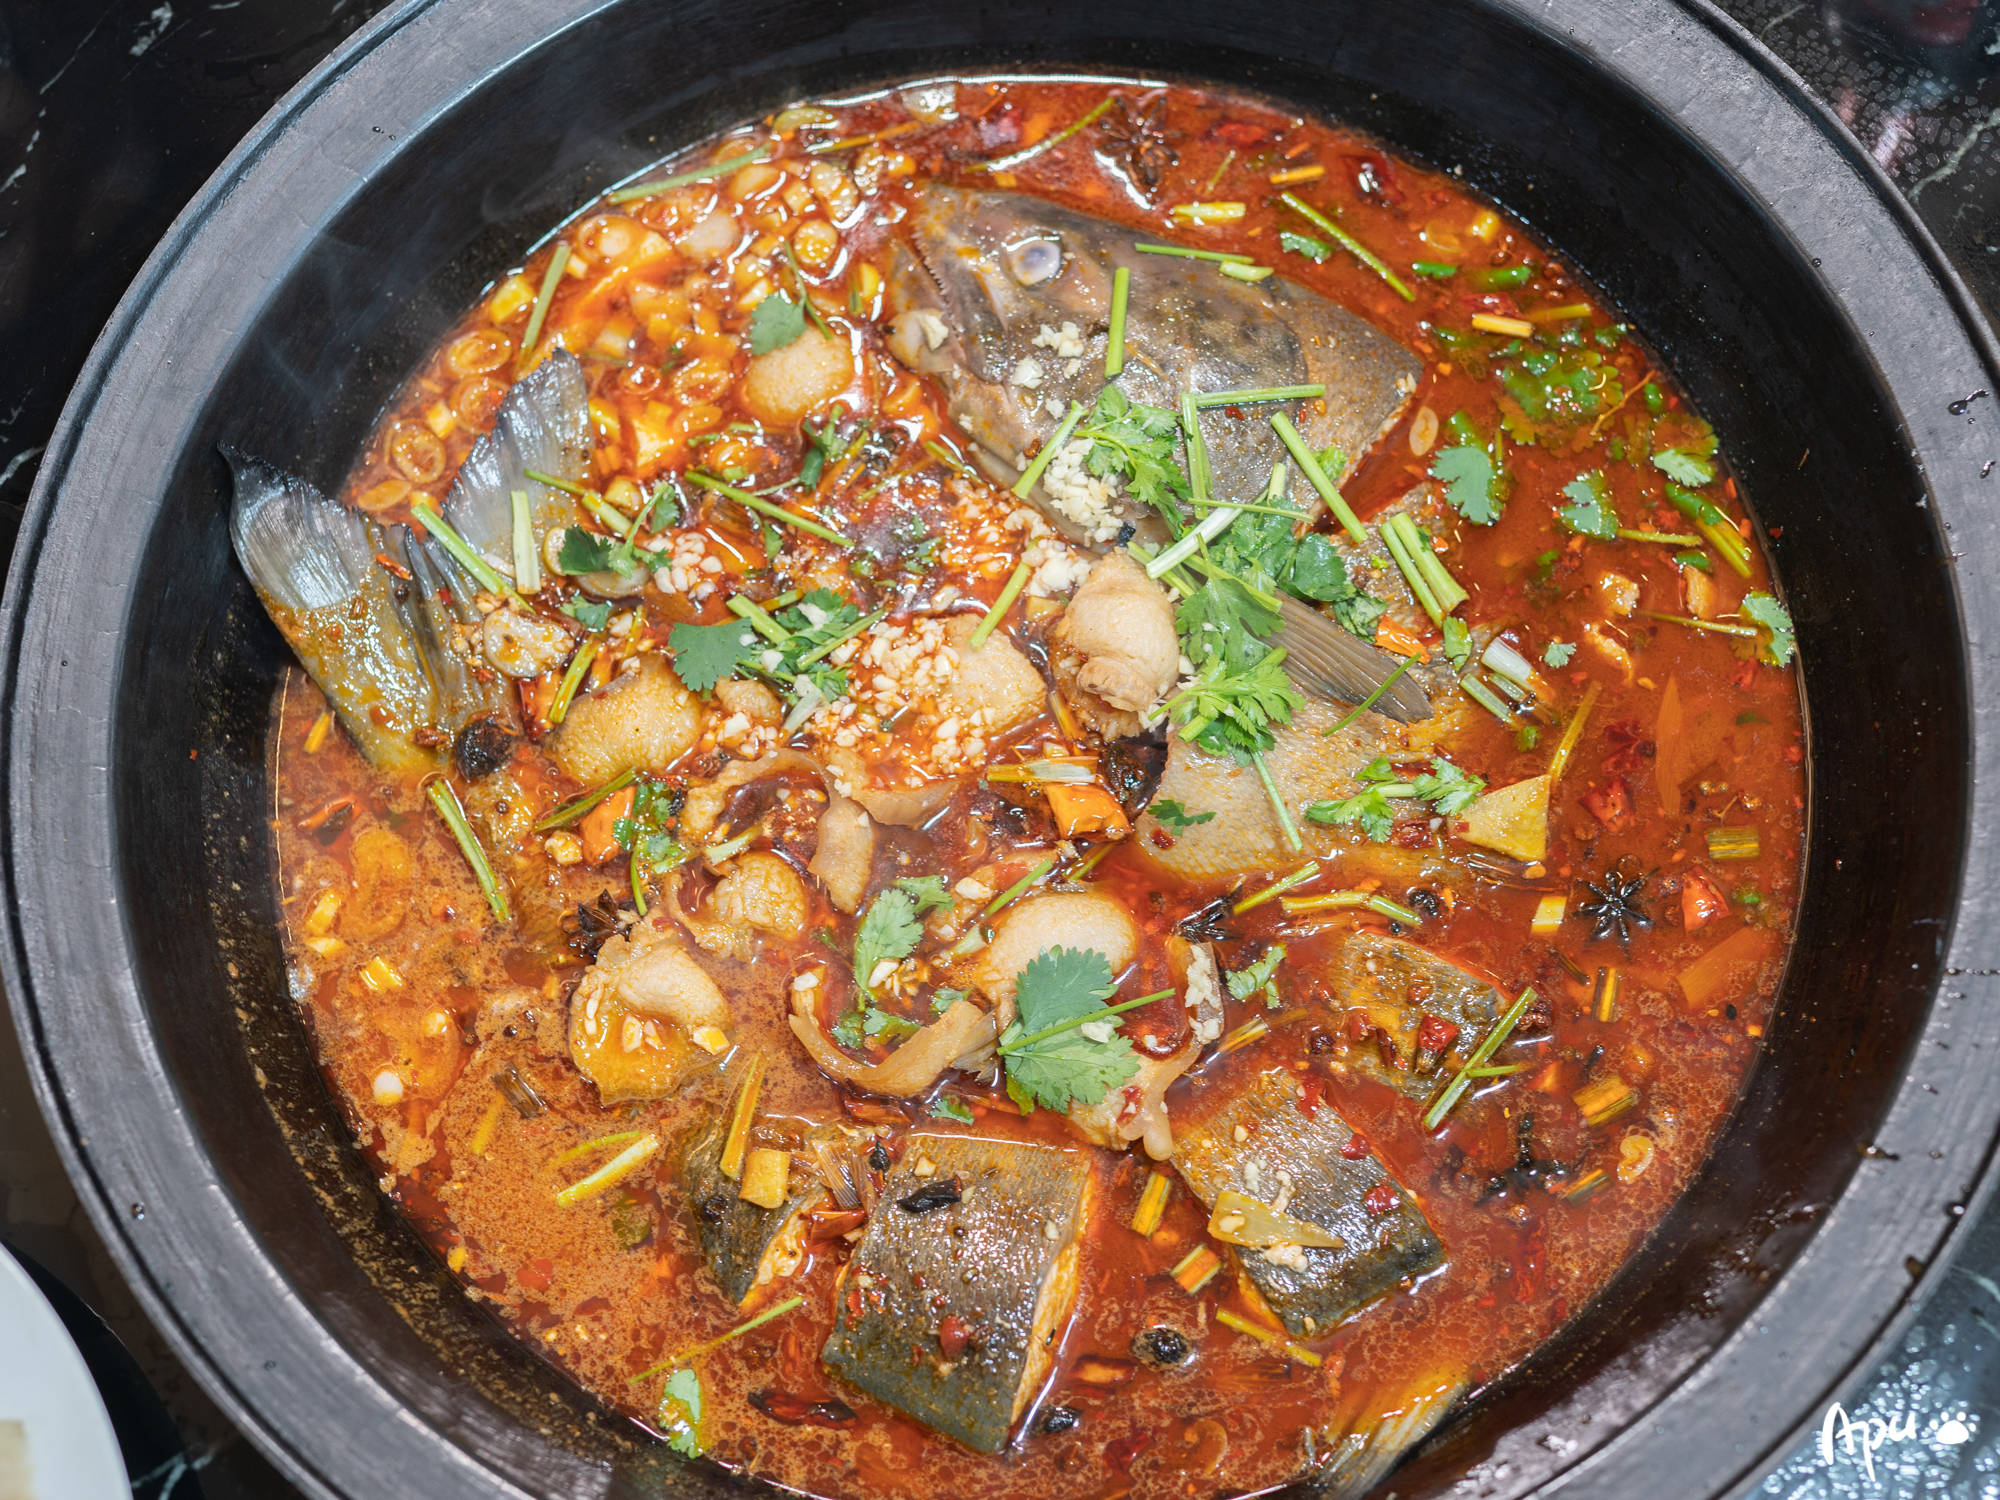 这一锅特色又美味的铁锅炖鱼,邻桌东北妹纸直夸有东北